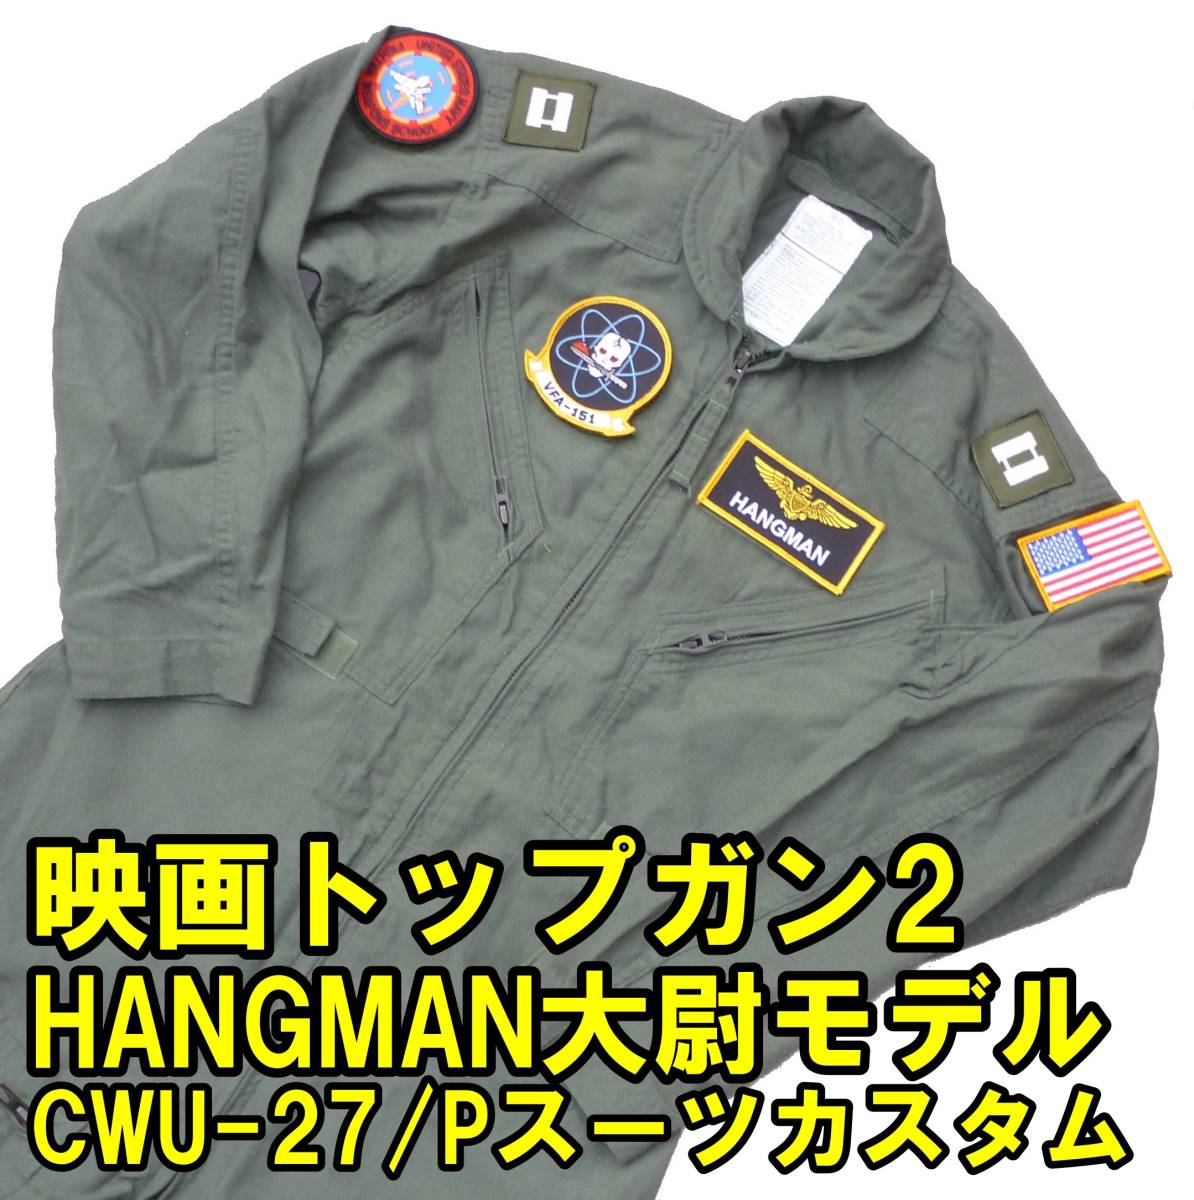 ■映画トップガン2 HANGMAN大尉仕様 実物CWU-27/P フライトスーツ 38S USED■